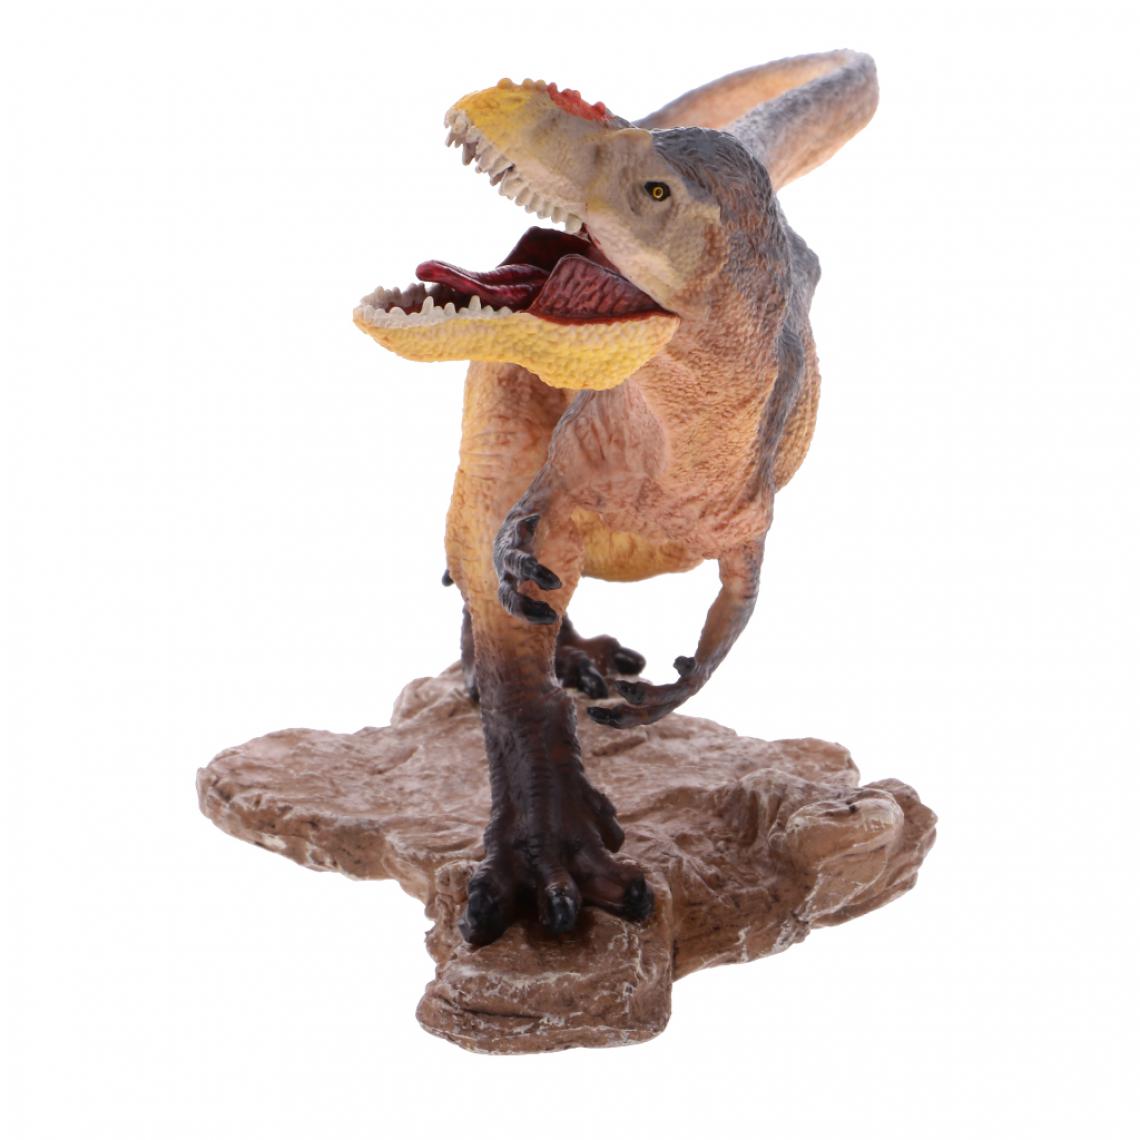 marque generique - Plastic Dinosaur Figure Model Action Figures Toy Quetzalcoatlus - Jouet pour chien